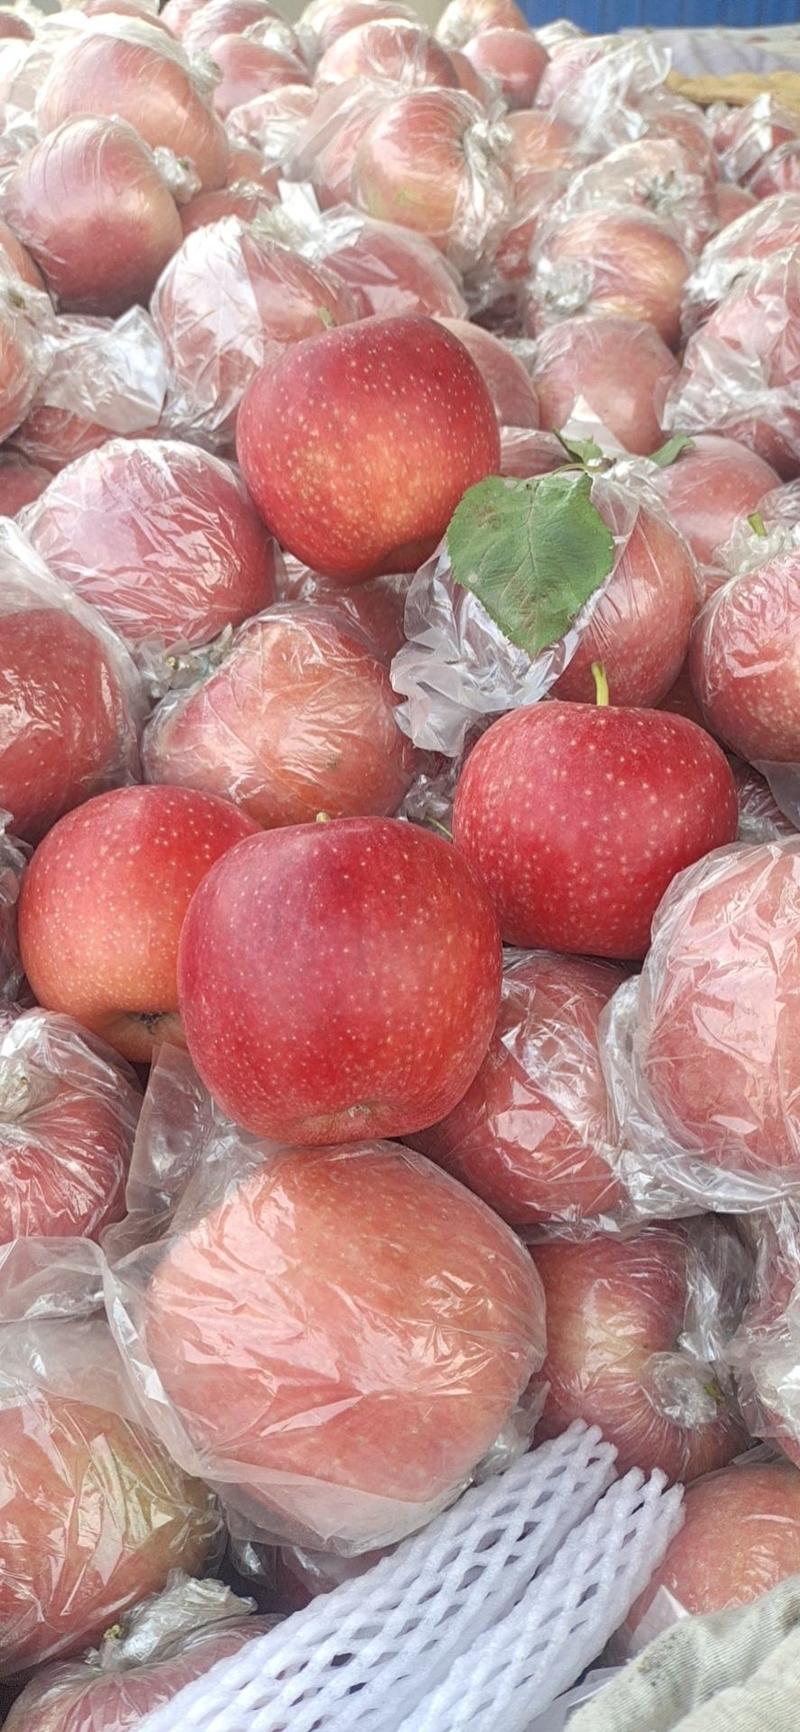 秀水苹果颜色全红口感纯甜货源充足交通方便